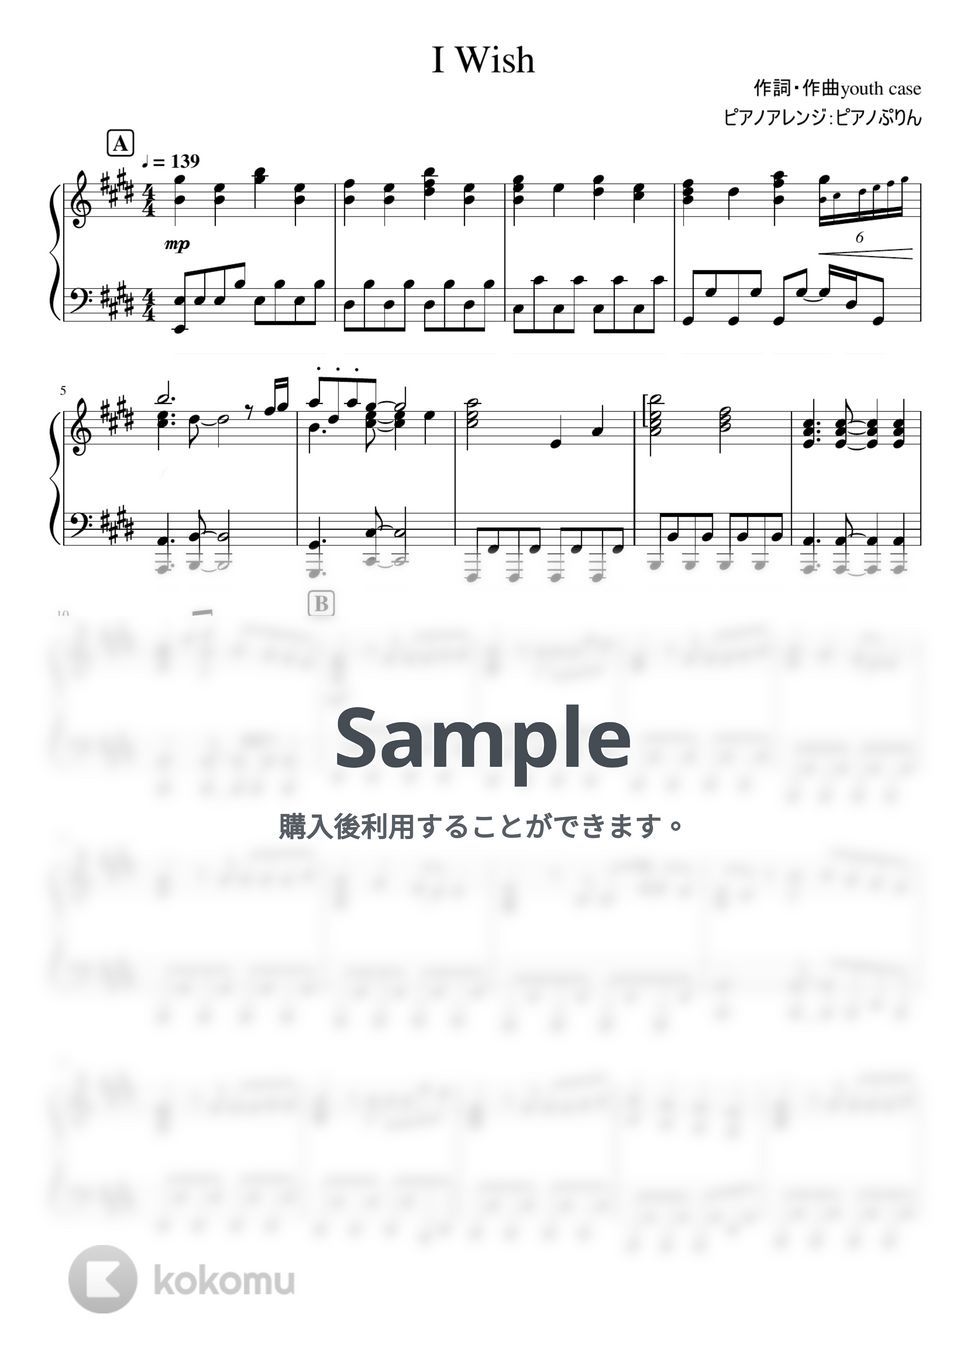 なにわ男子 - I Wish (6th Single「I Wish」/Short Ver./「マイ・セカンド・アオハル」主題歌) by ピアノぷりん